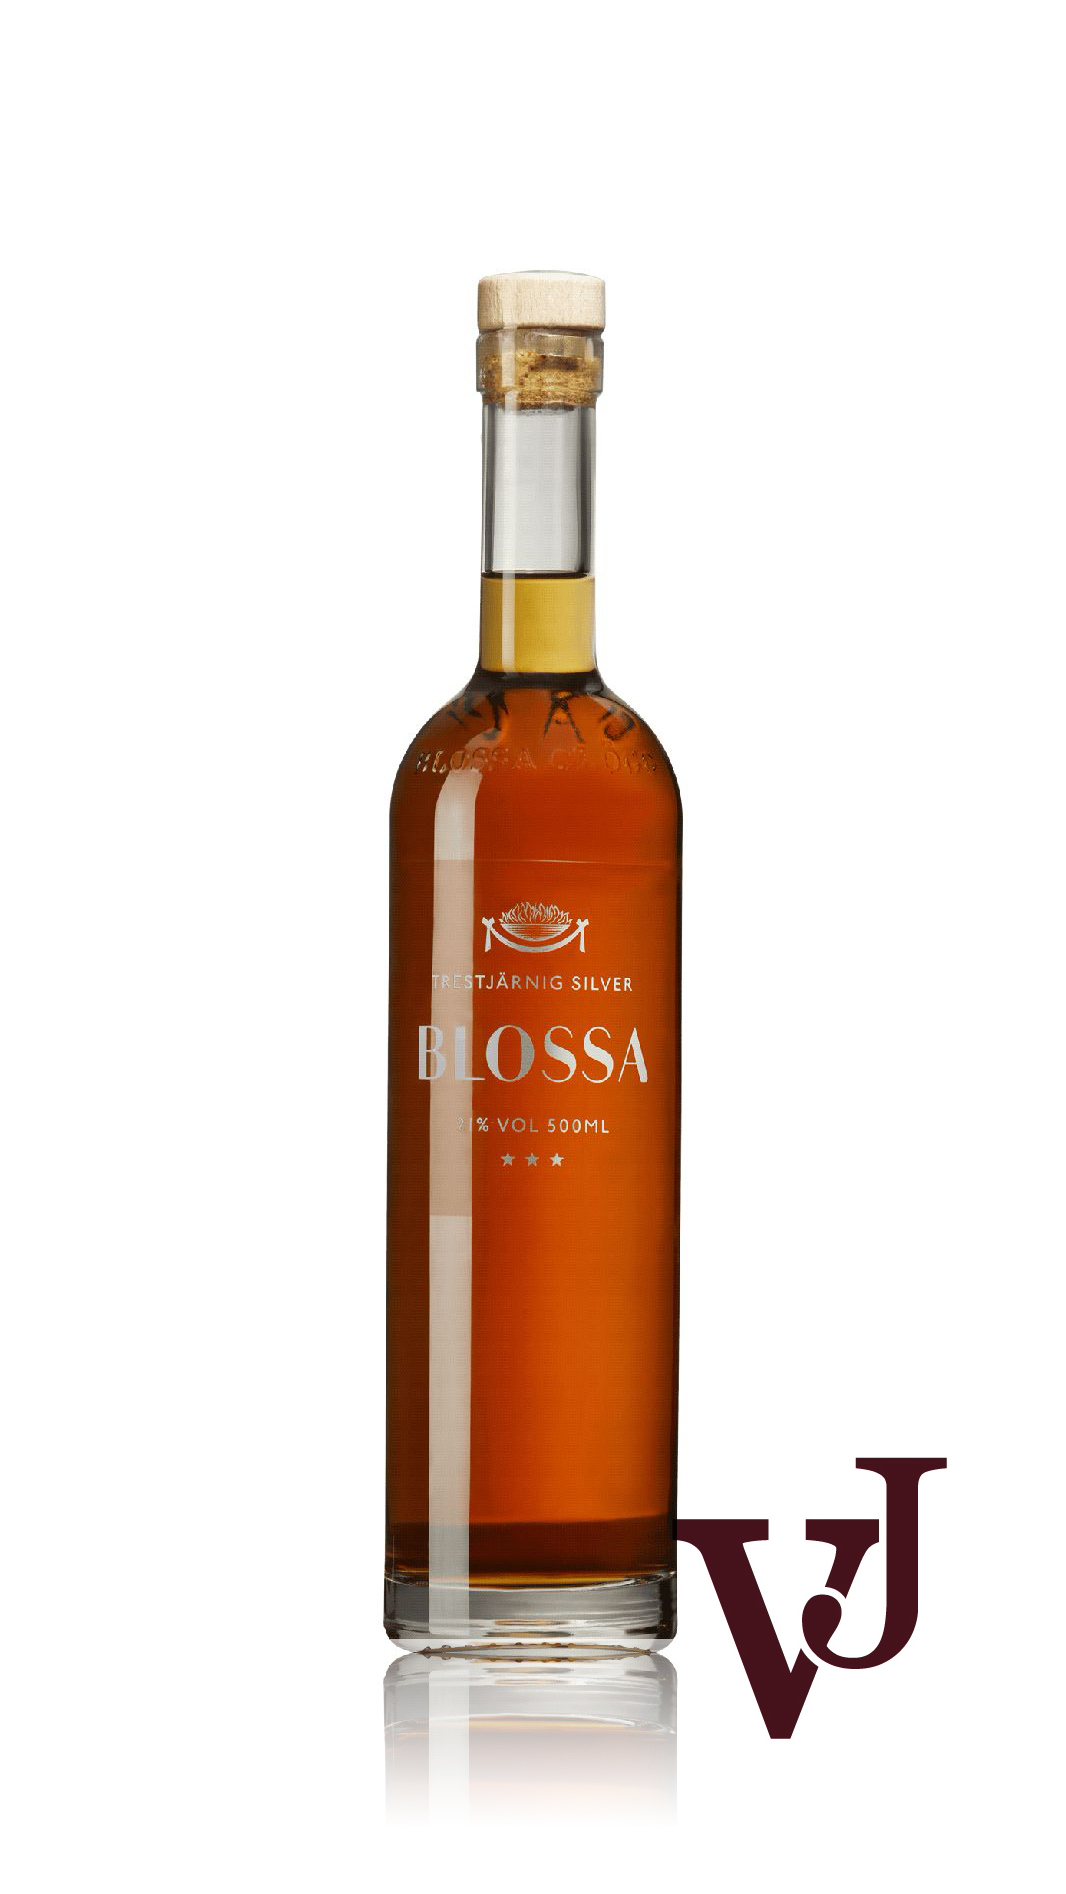 Övrigt vin - Blossa Trestjärnig Silver artikel nummer 9651802 från producenten Altia från området Varumärketärinternationellt